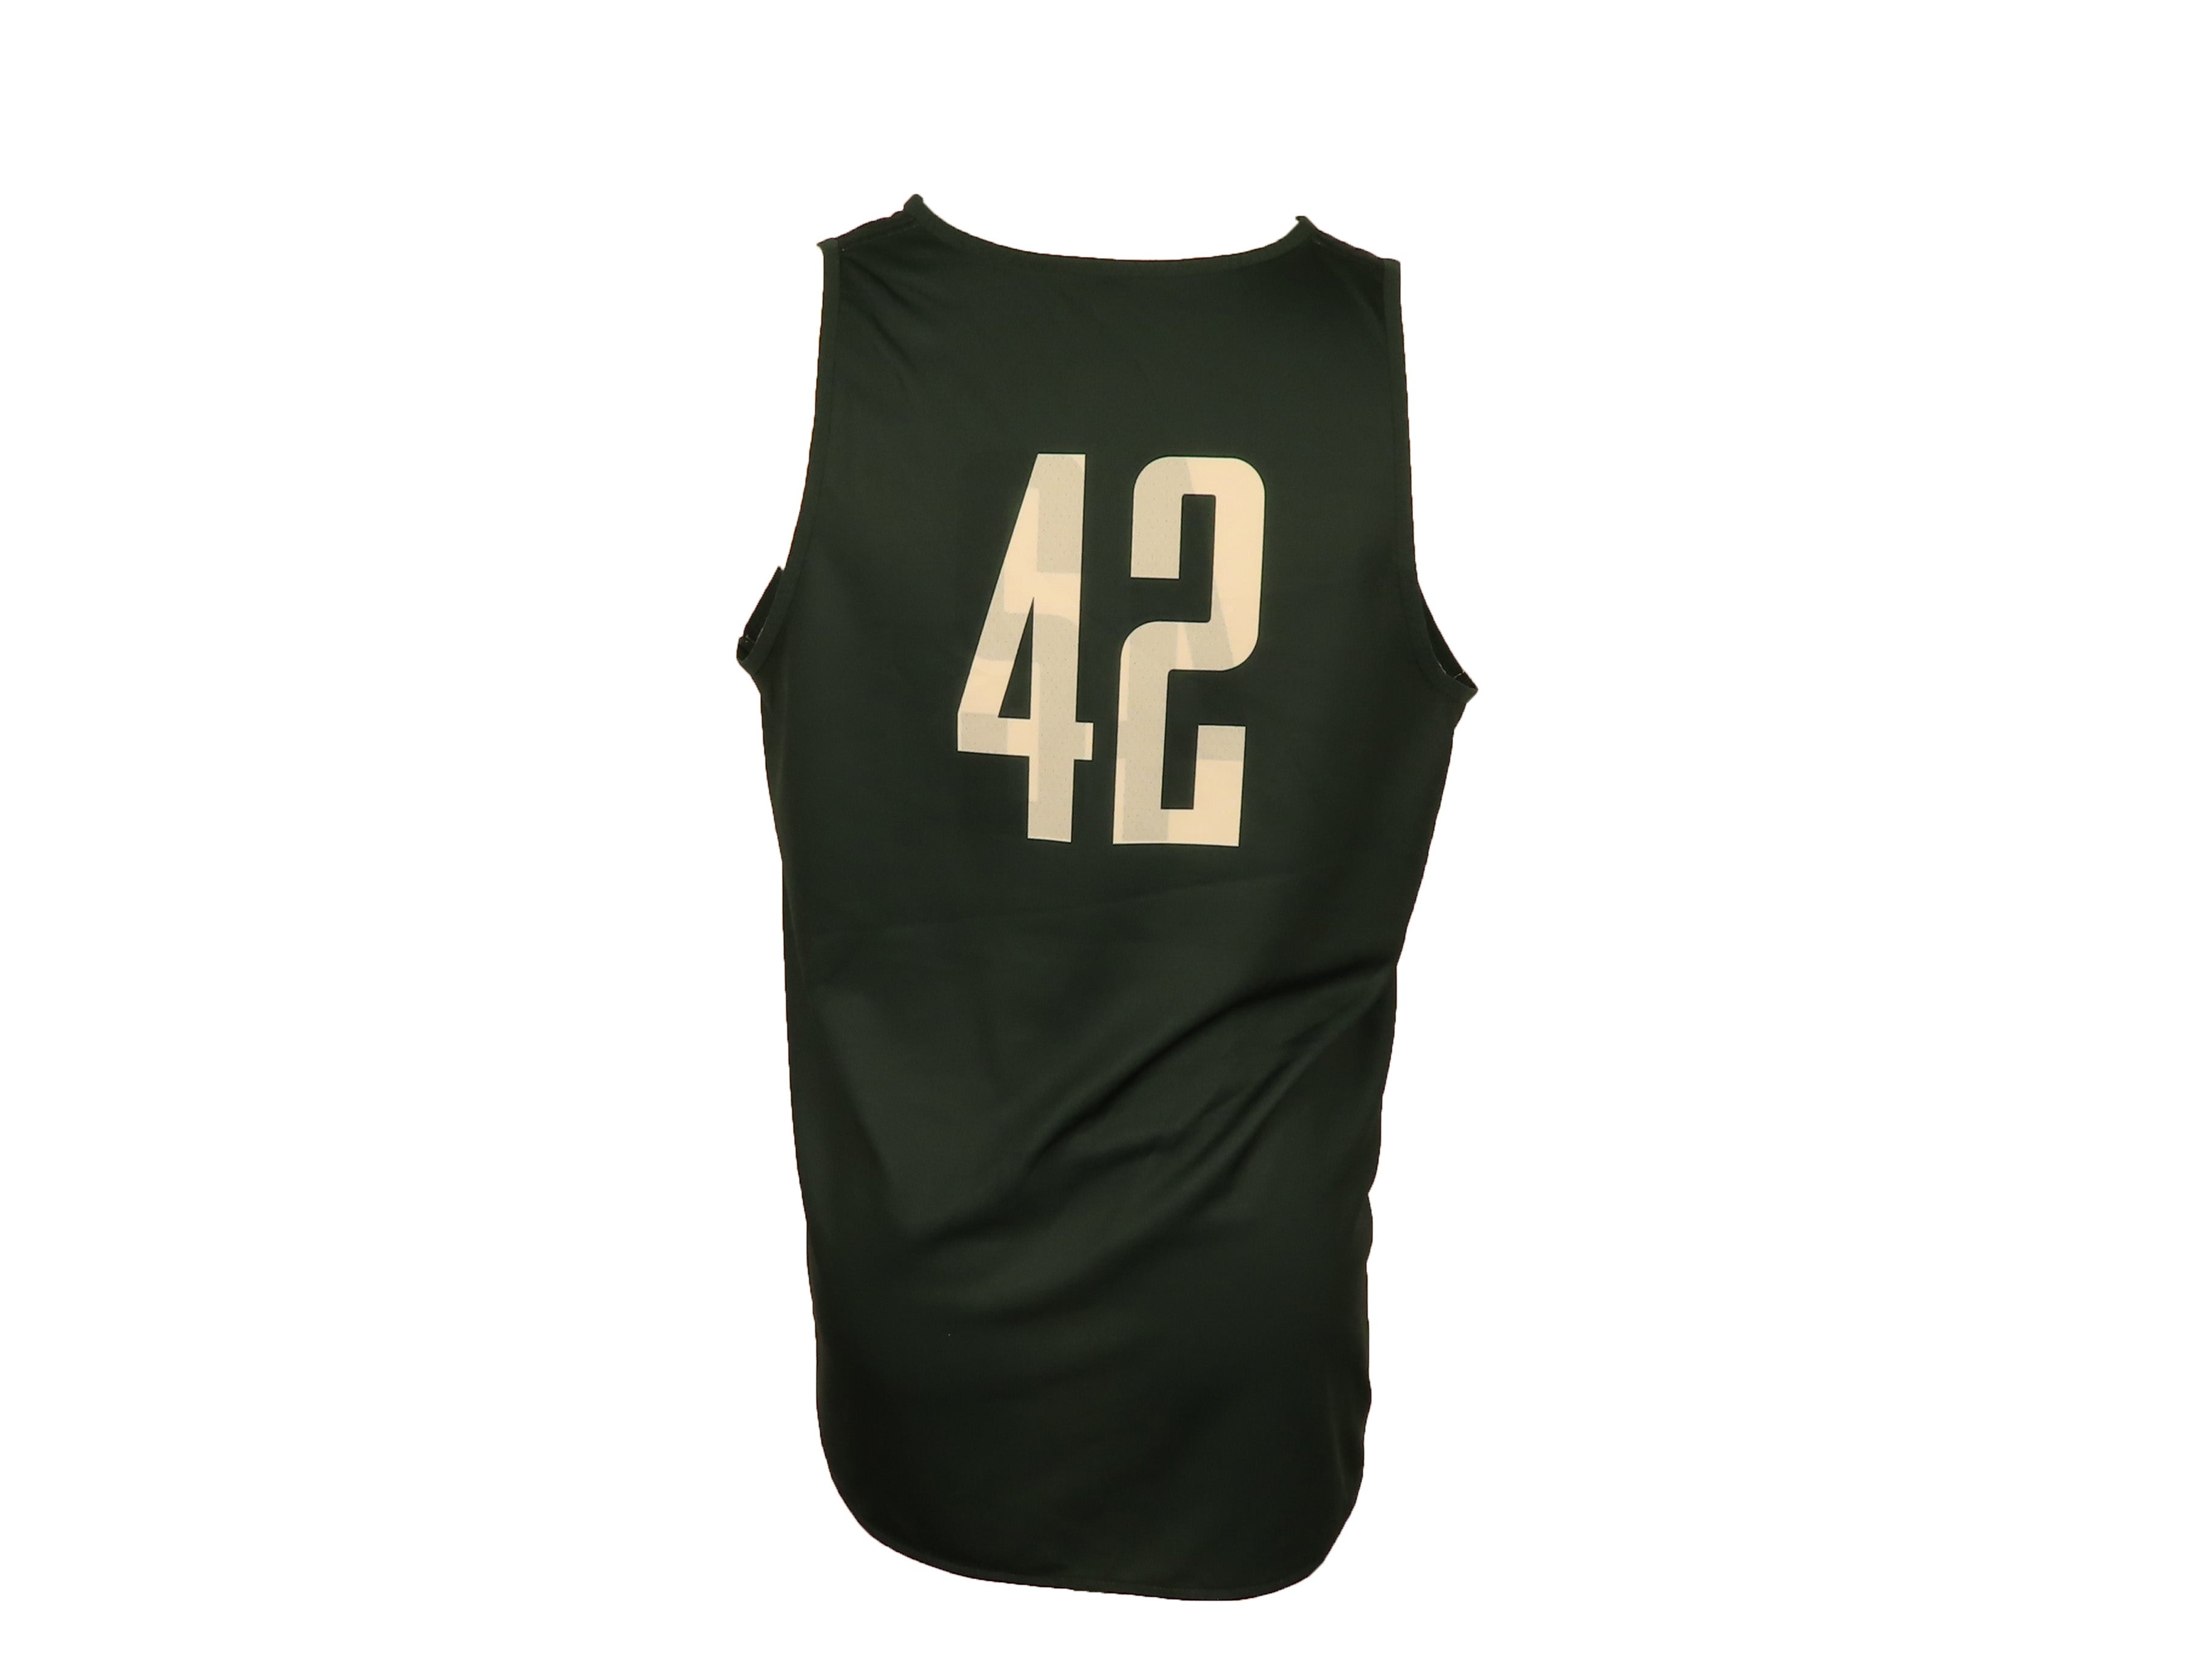 Nike Green & White Reversible Women's Basketball #42 Jersey Size XL